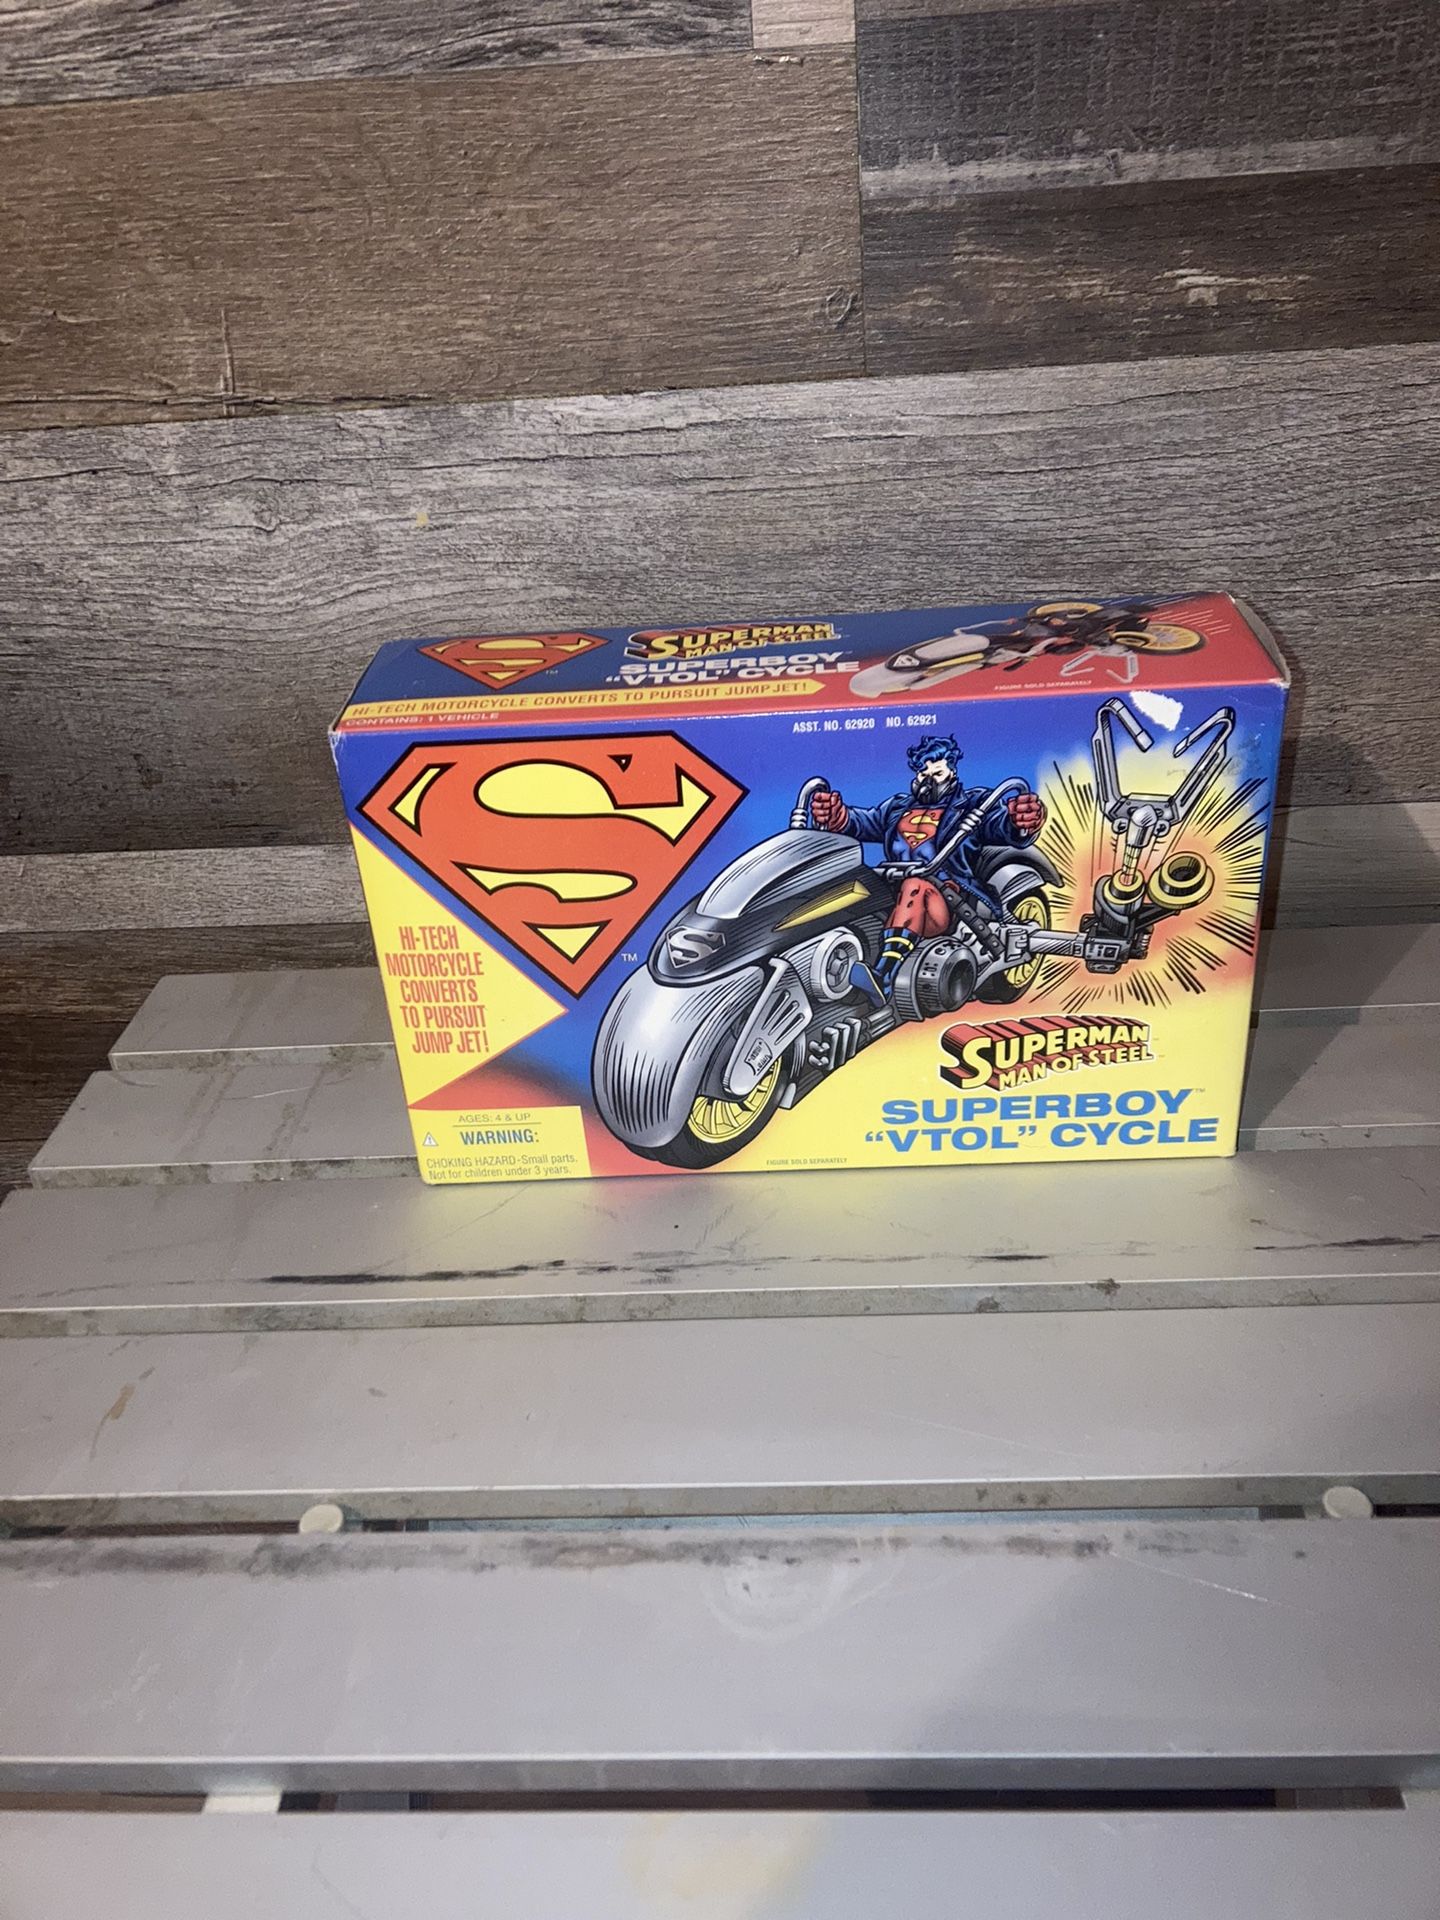 Superman Man of Steel Superboy  Vtol Cycle